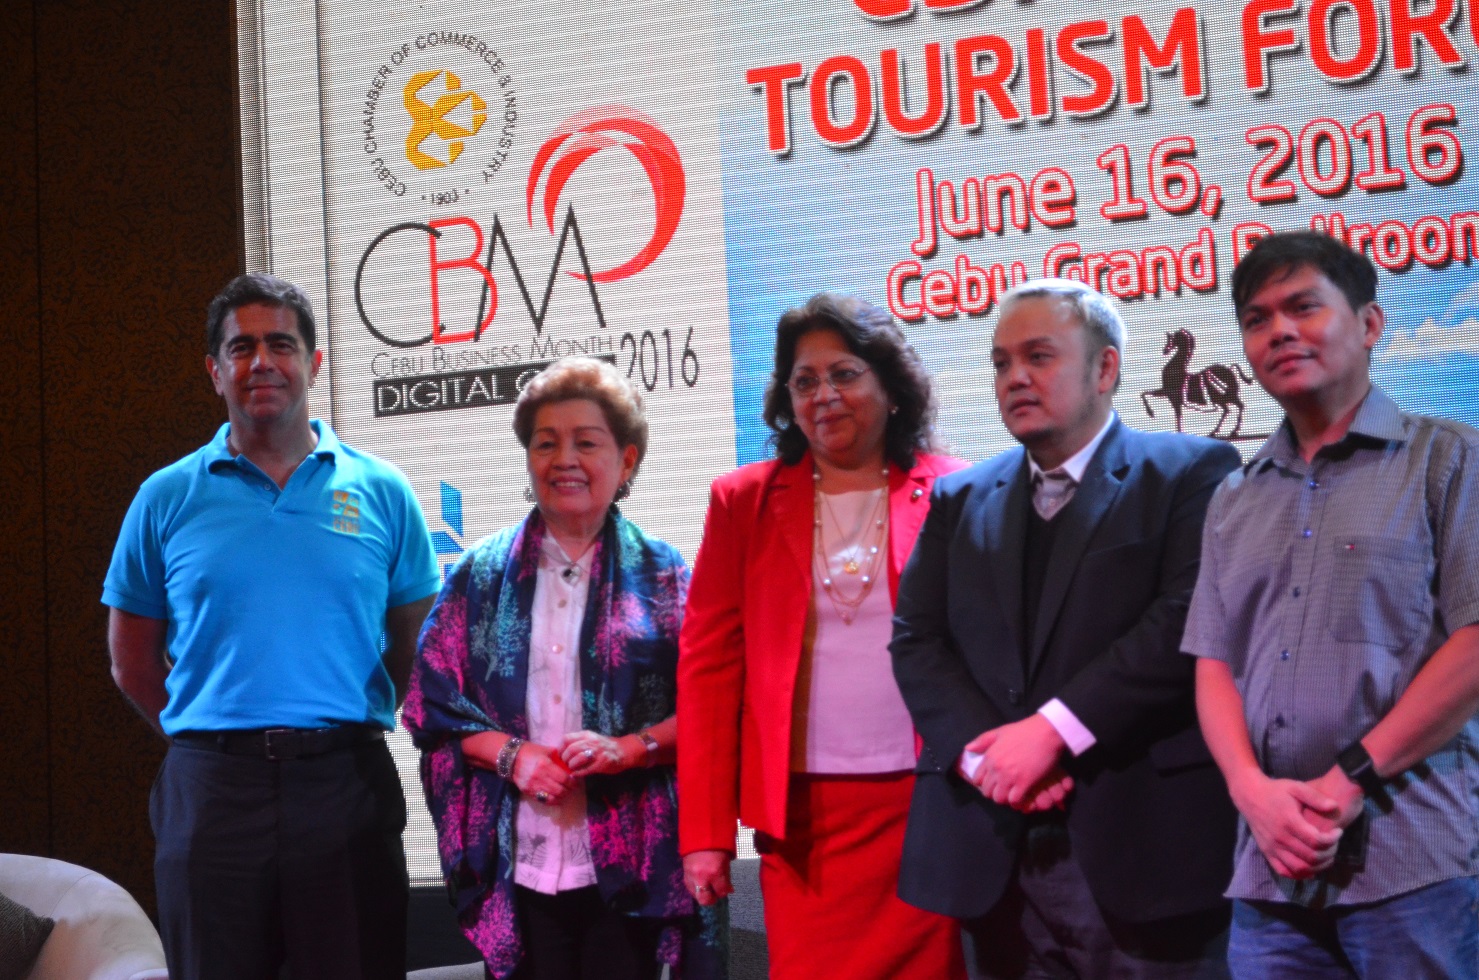 Mega Cebu to Promote Tourism through Collaborative, Sustainable Development